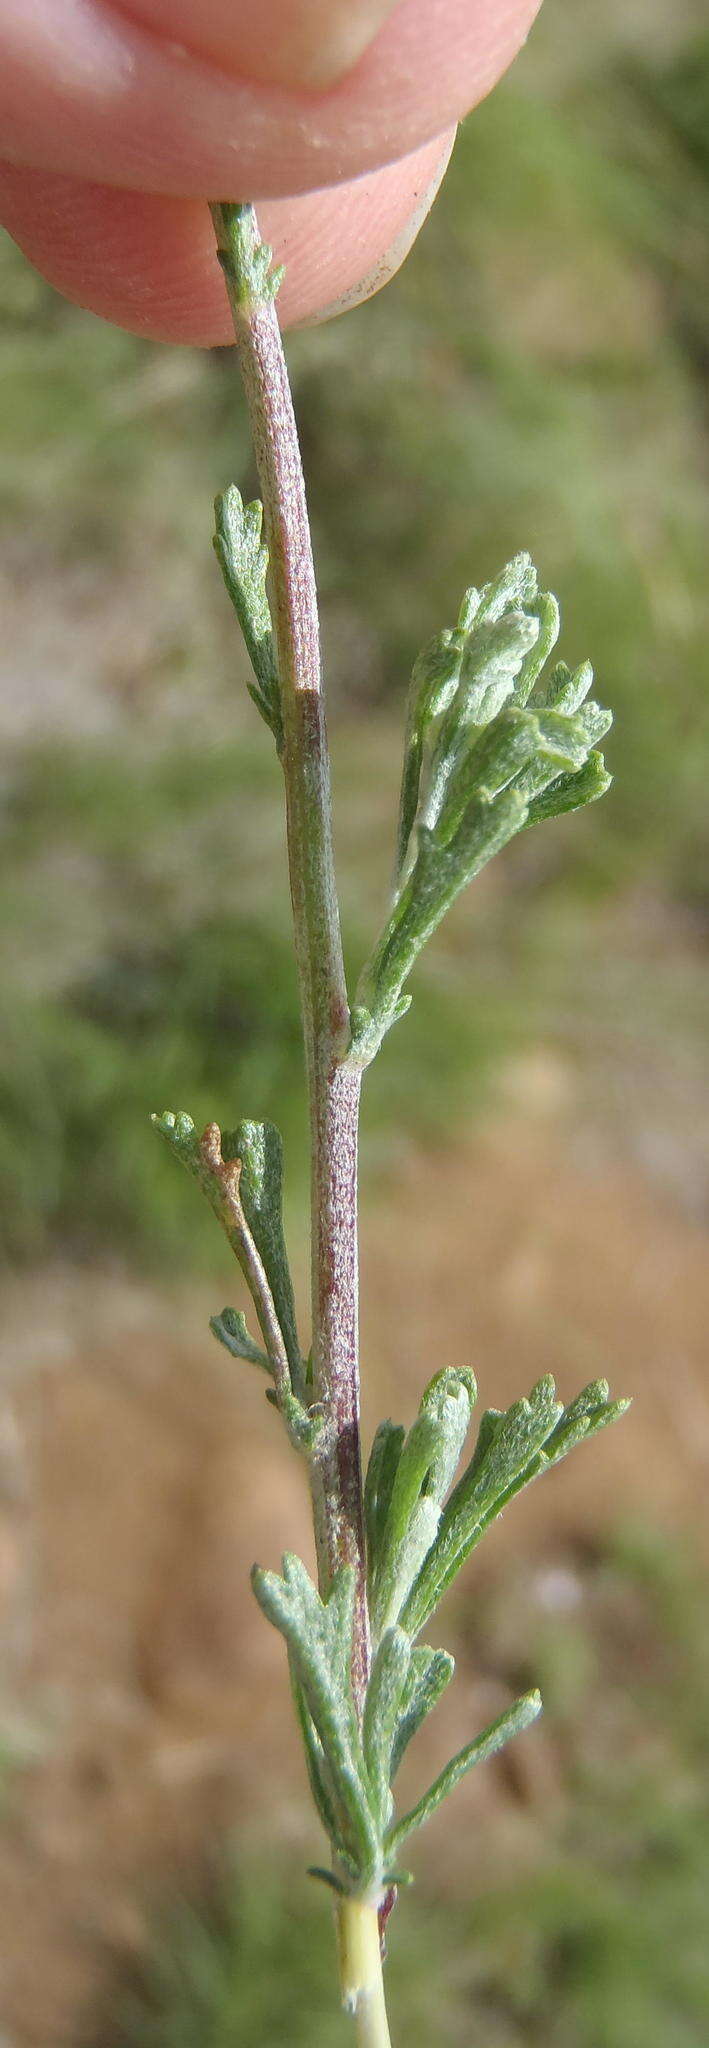 Image of Pentzia quinquefida (Thunb.) Less.